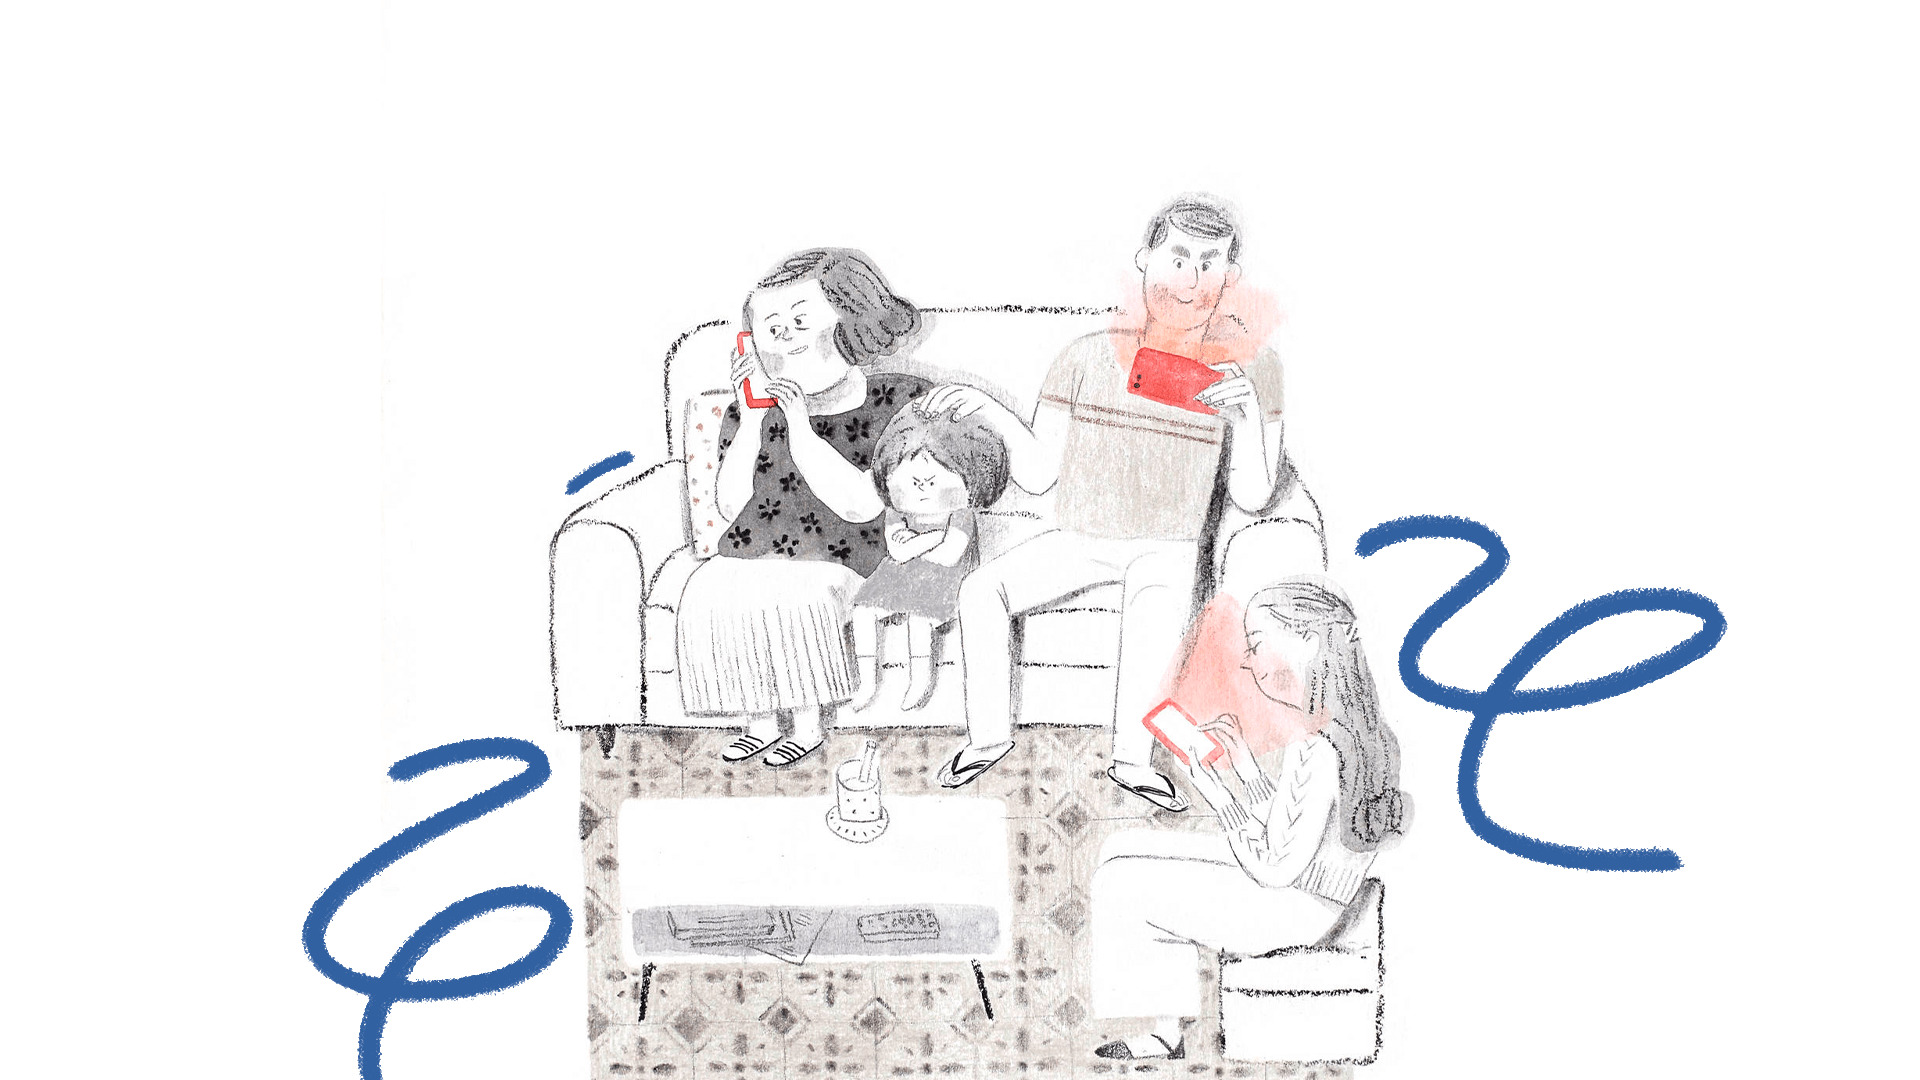 imagem de capa para matéria sobre livros e tecnologia mostra uma ilustração em que uma fam[ilia está sentada em um sofá usando eletrônicos